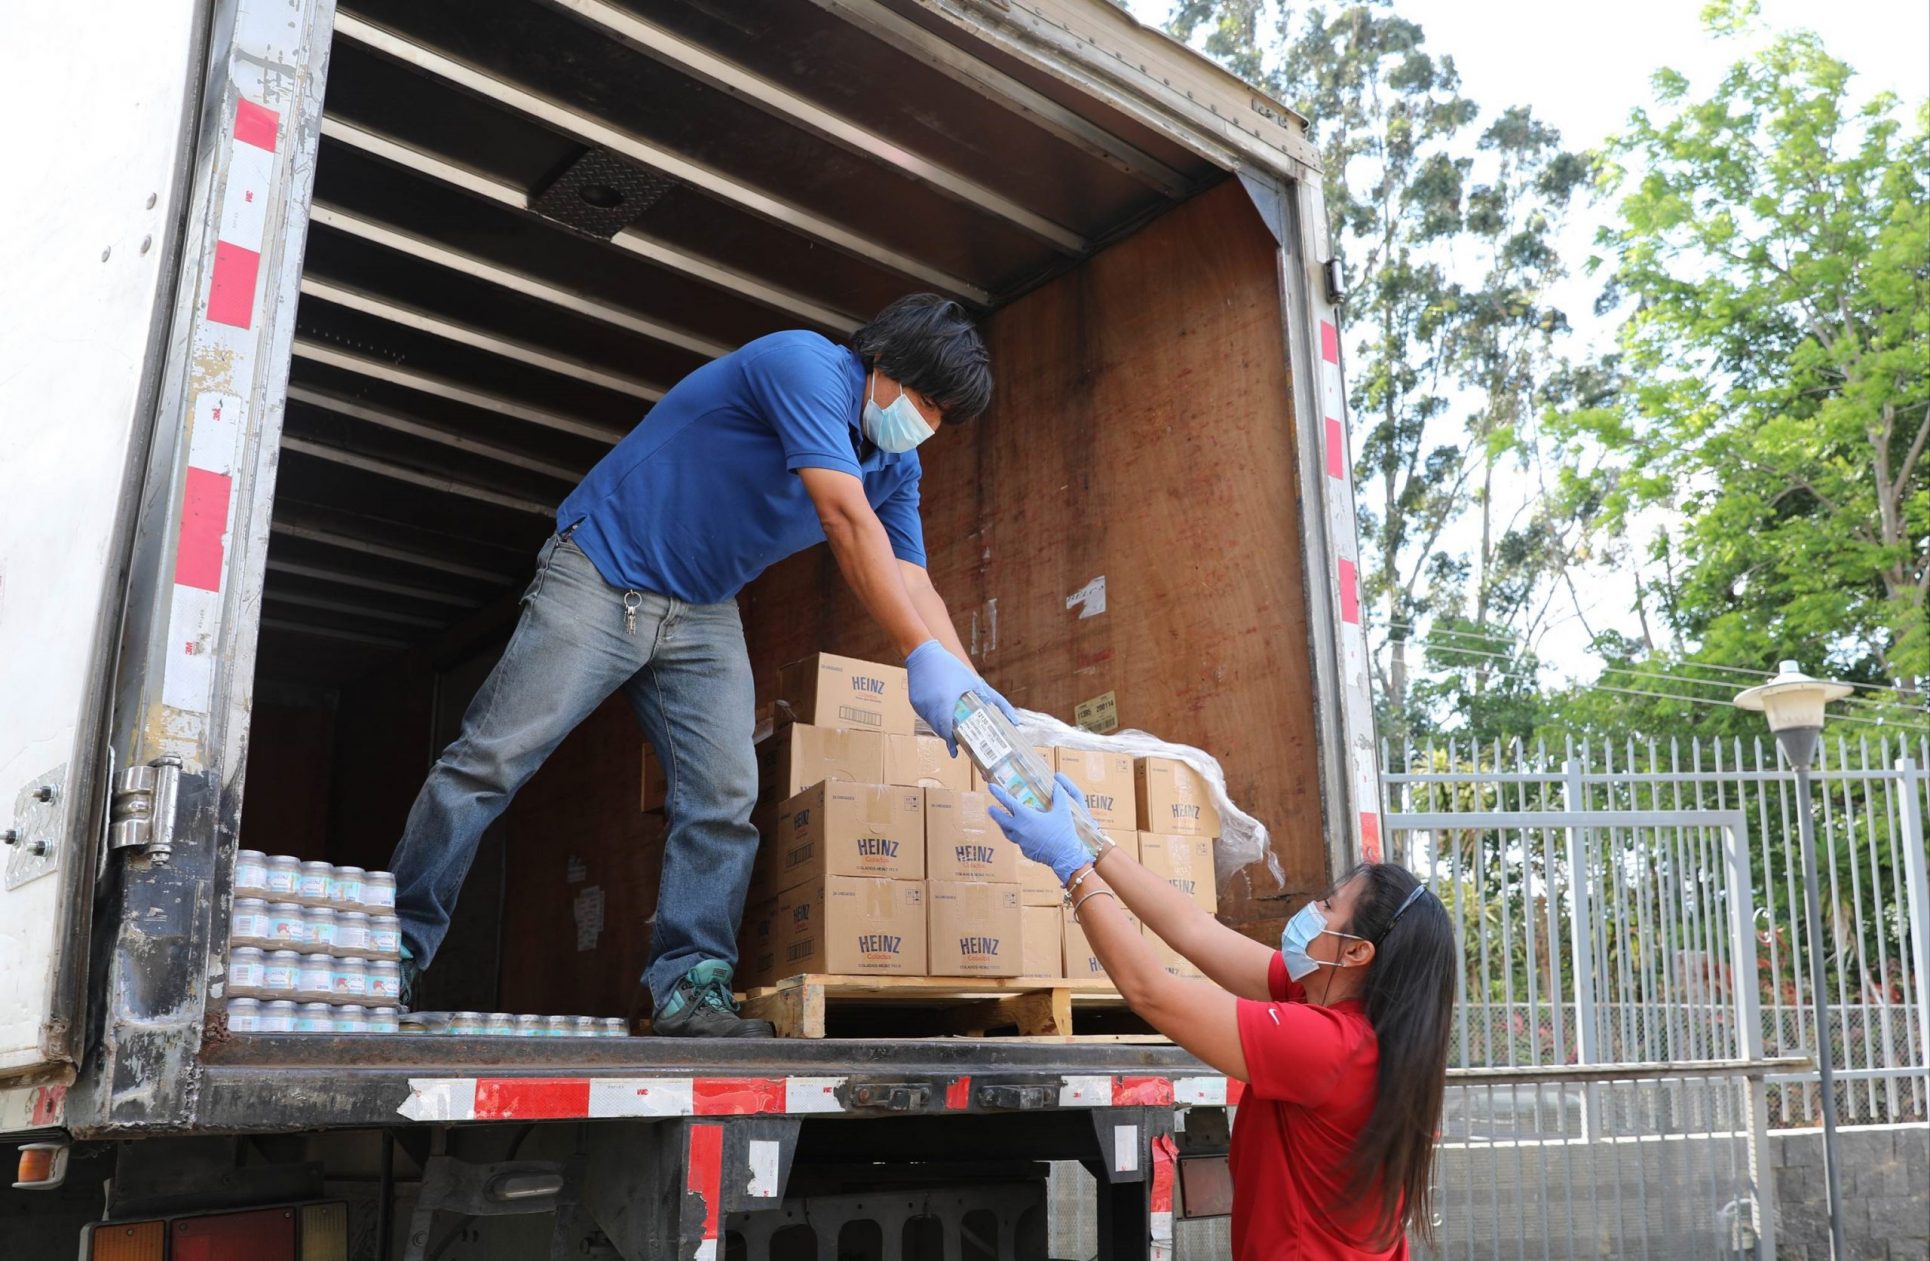 Golpeada y lastimada, la empresa privada en Costa Rica sigue sosteniendo el empleo y hace donaciones